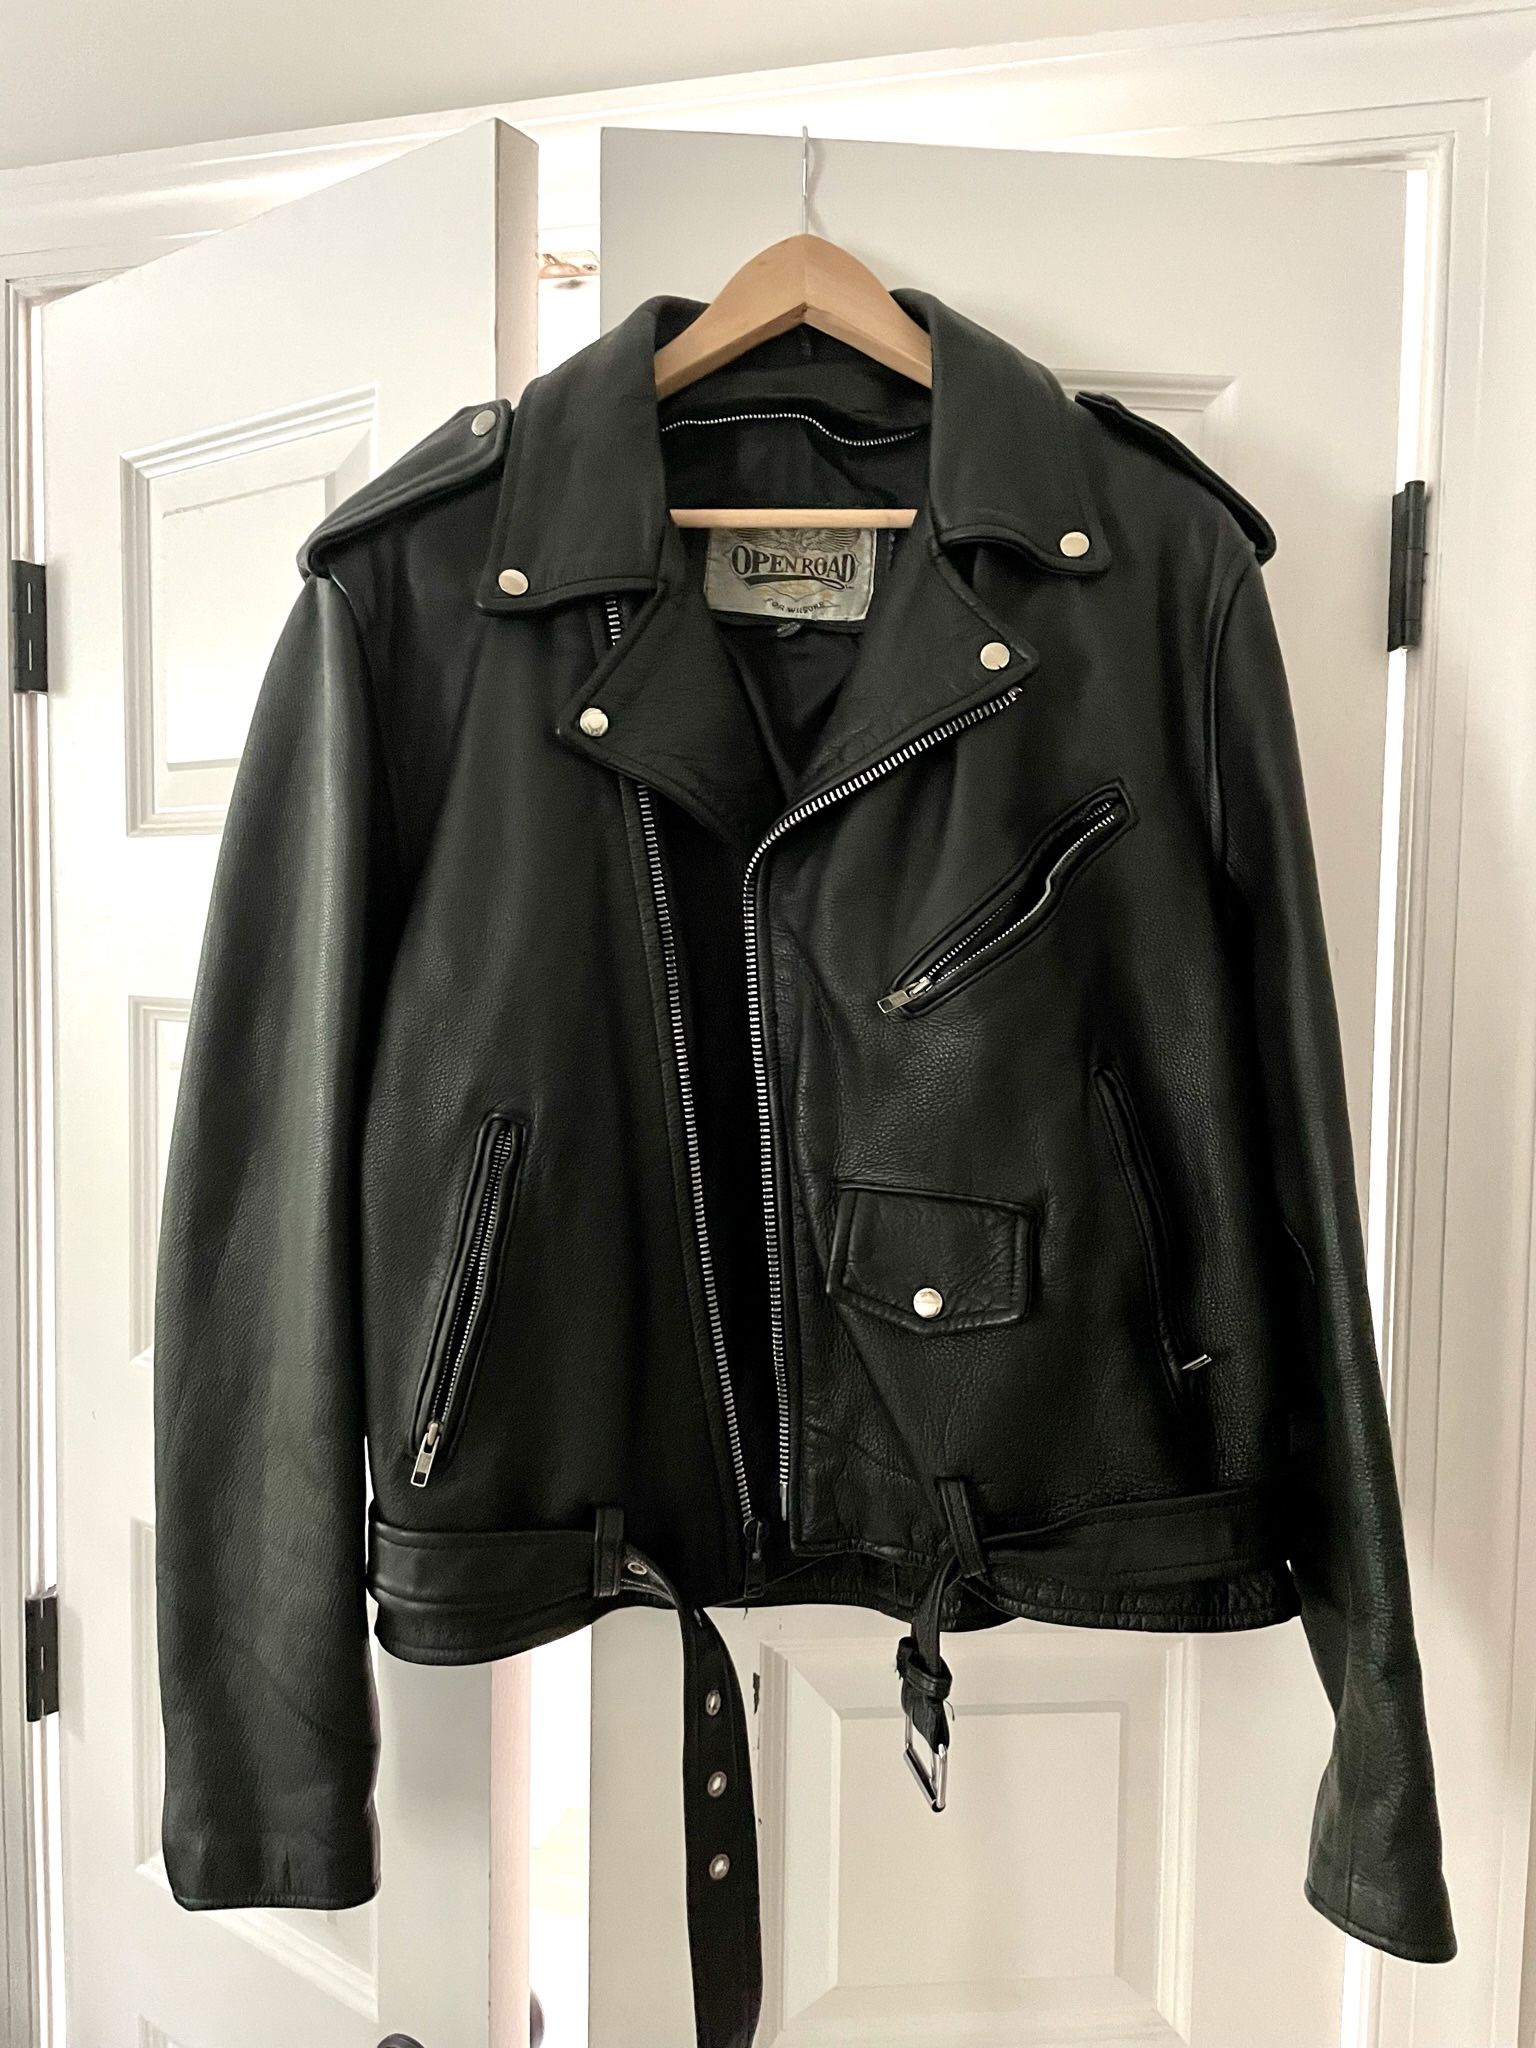 Vintage leather Jacket